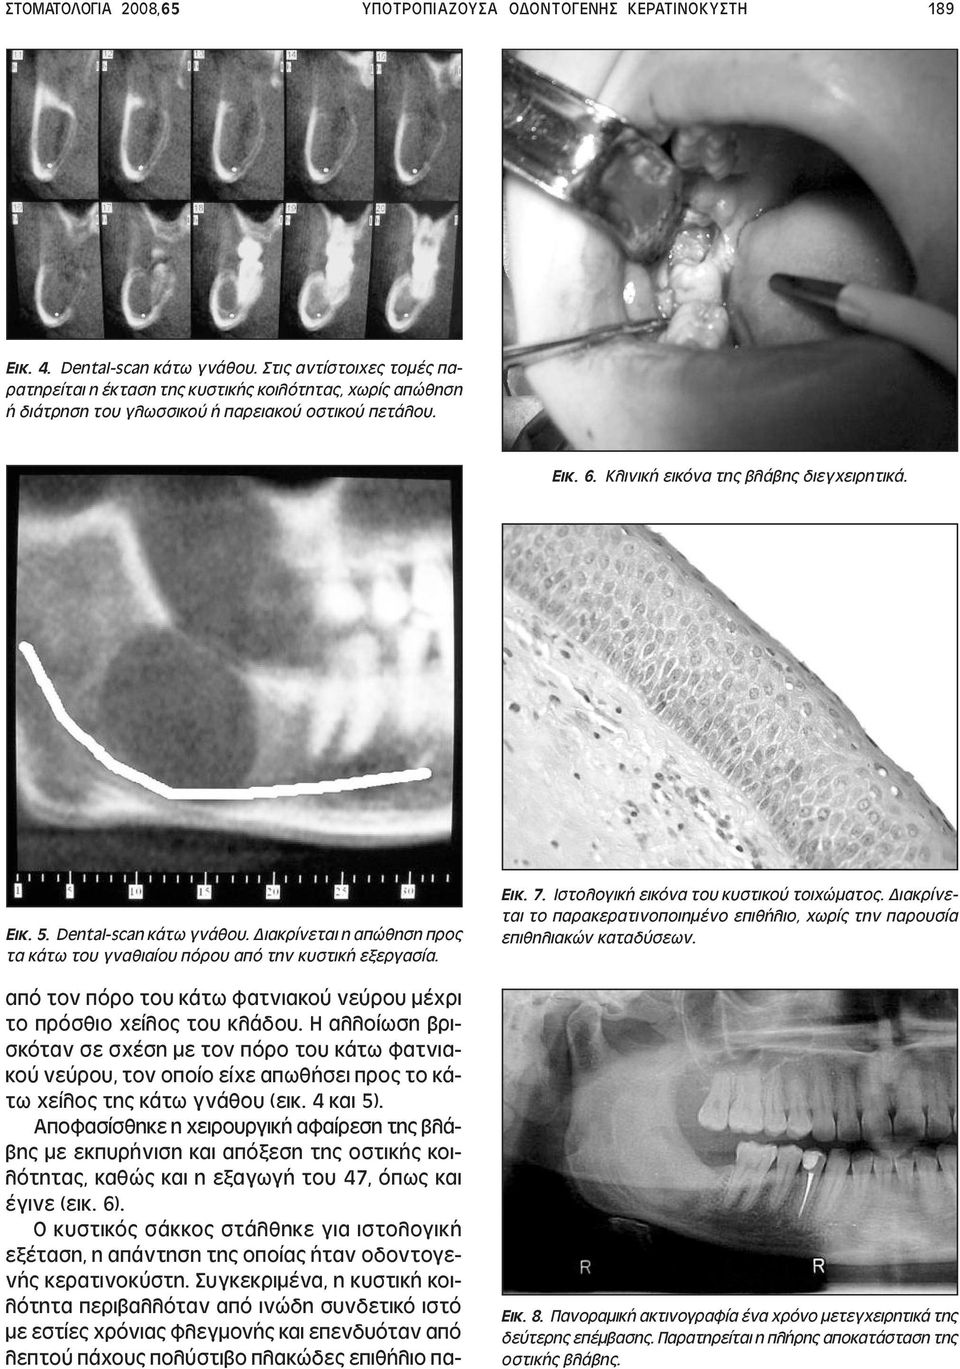 Dental-scan κάτω γνάθου. ιακρίνεται η απώθηση προς τα κάτω του γναθιαίου πόρου από την κυστική εξεργασία. από τον πόρο του κάτω φατνιακού νεύρου µέχρι το πρόσθιο χείλος του κλάδου.